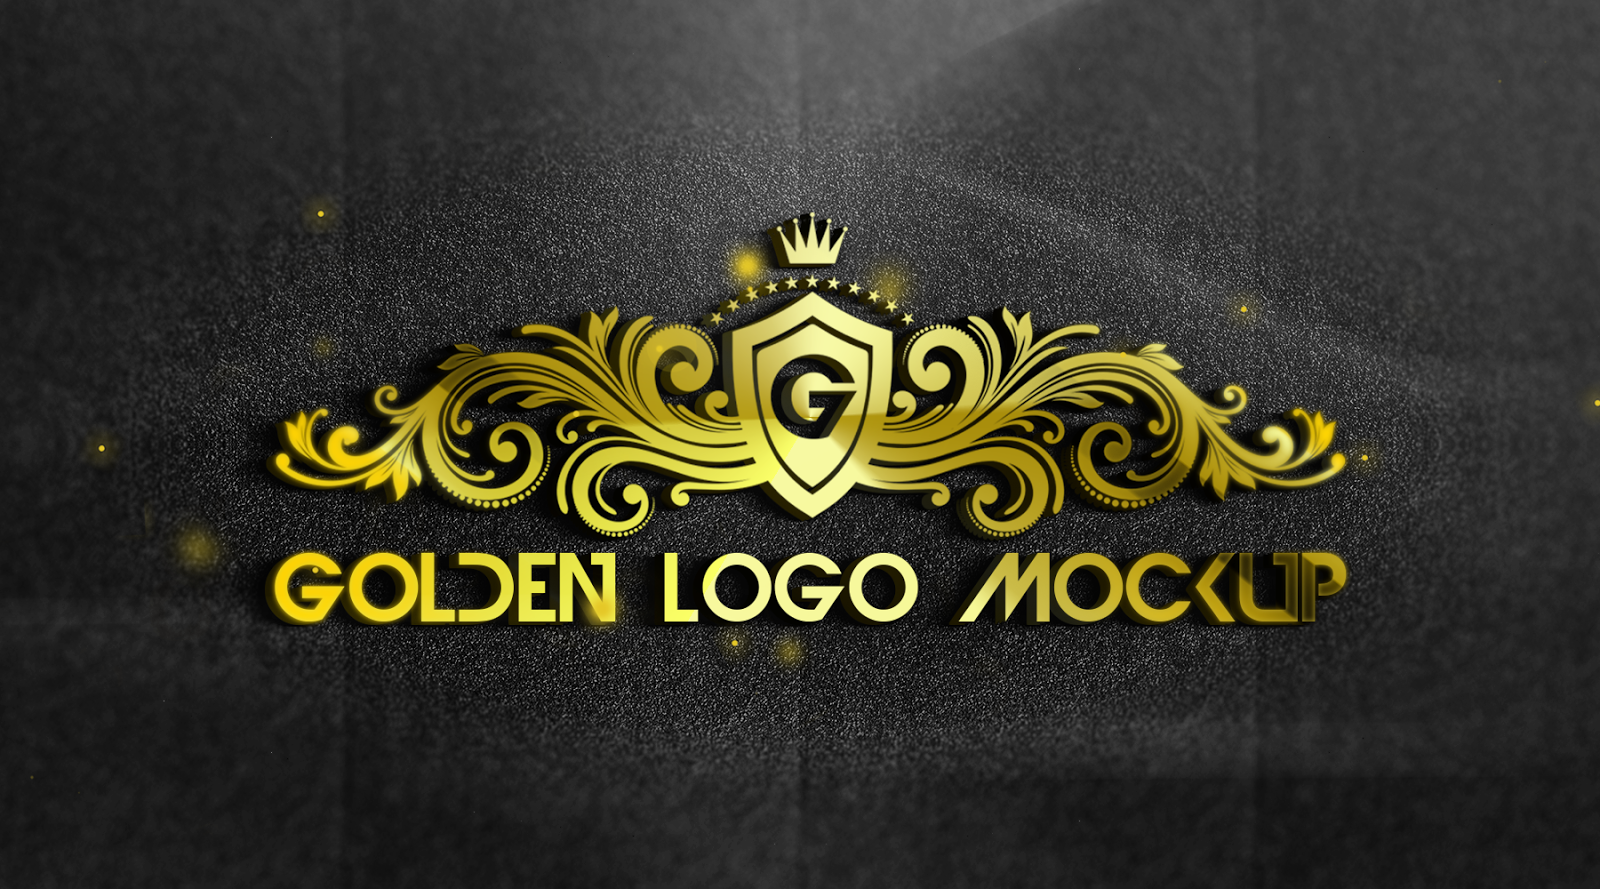 Golden перевод на русский. Логотип золото. Золотистый логотип. Логотип с золотом. Логотип Golden Design.